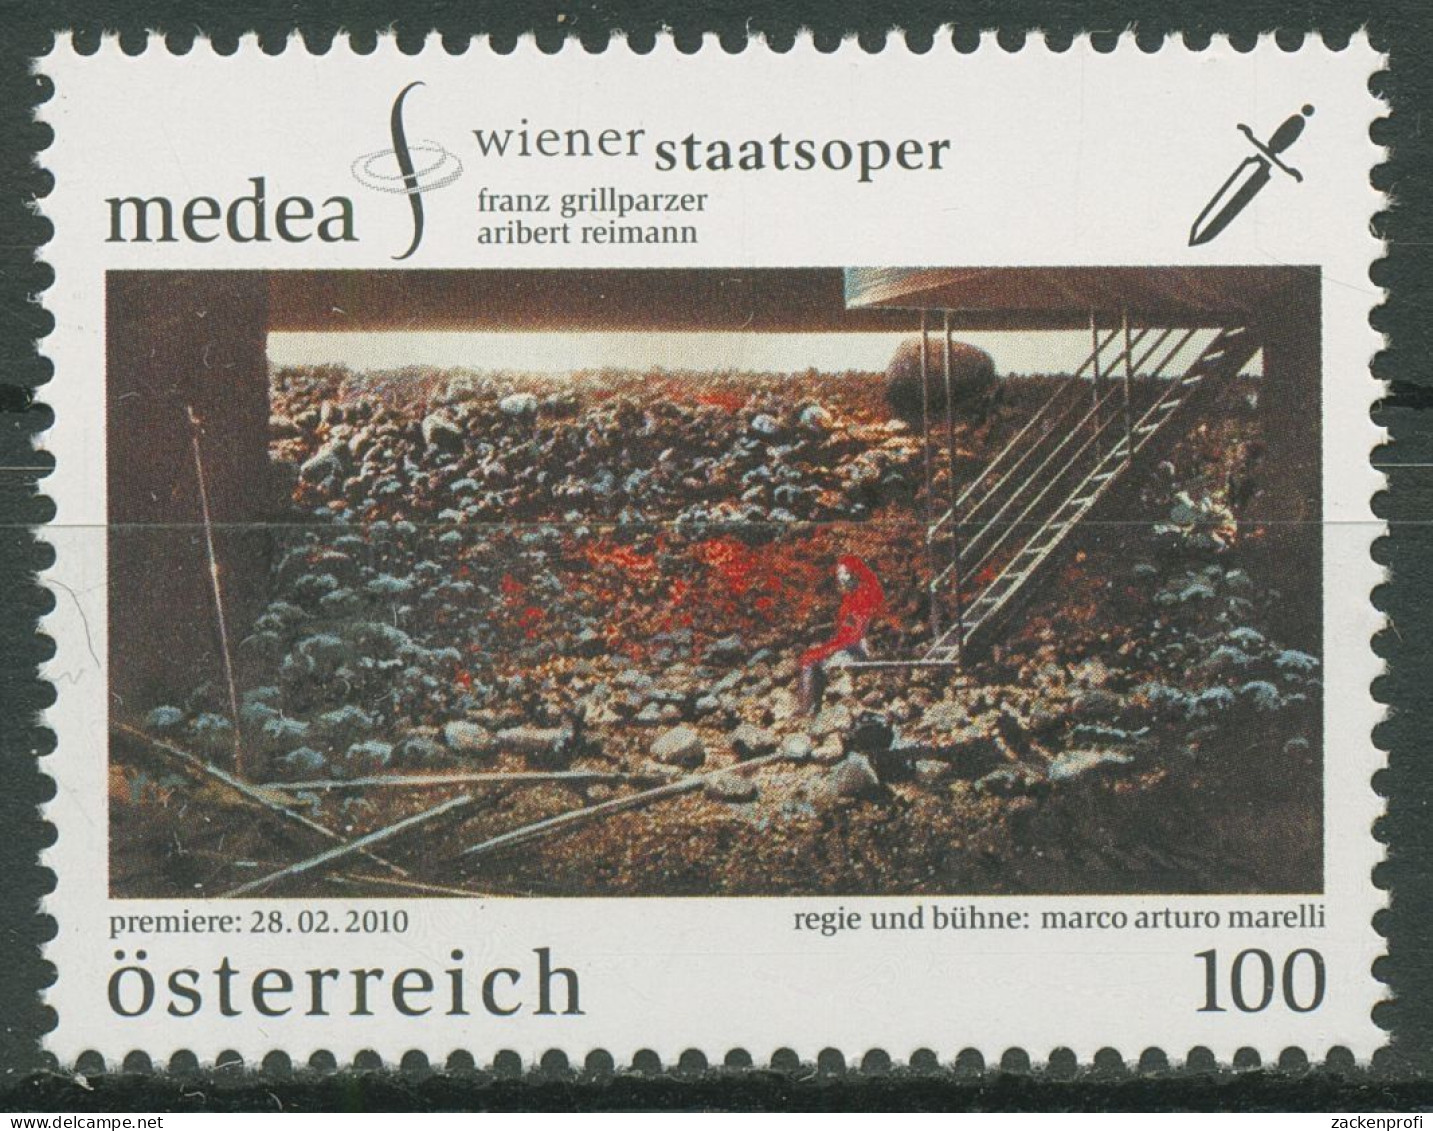 Österreich 2010 Wiener Staatsoper "Medea" 2857 Postfrisch - Nuovi